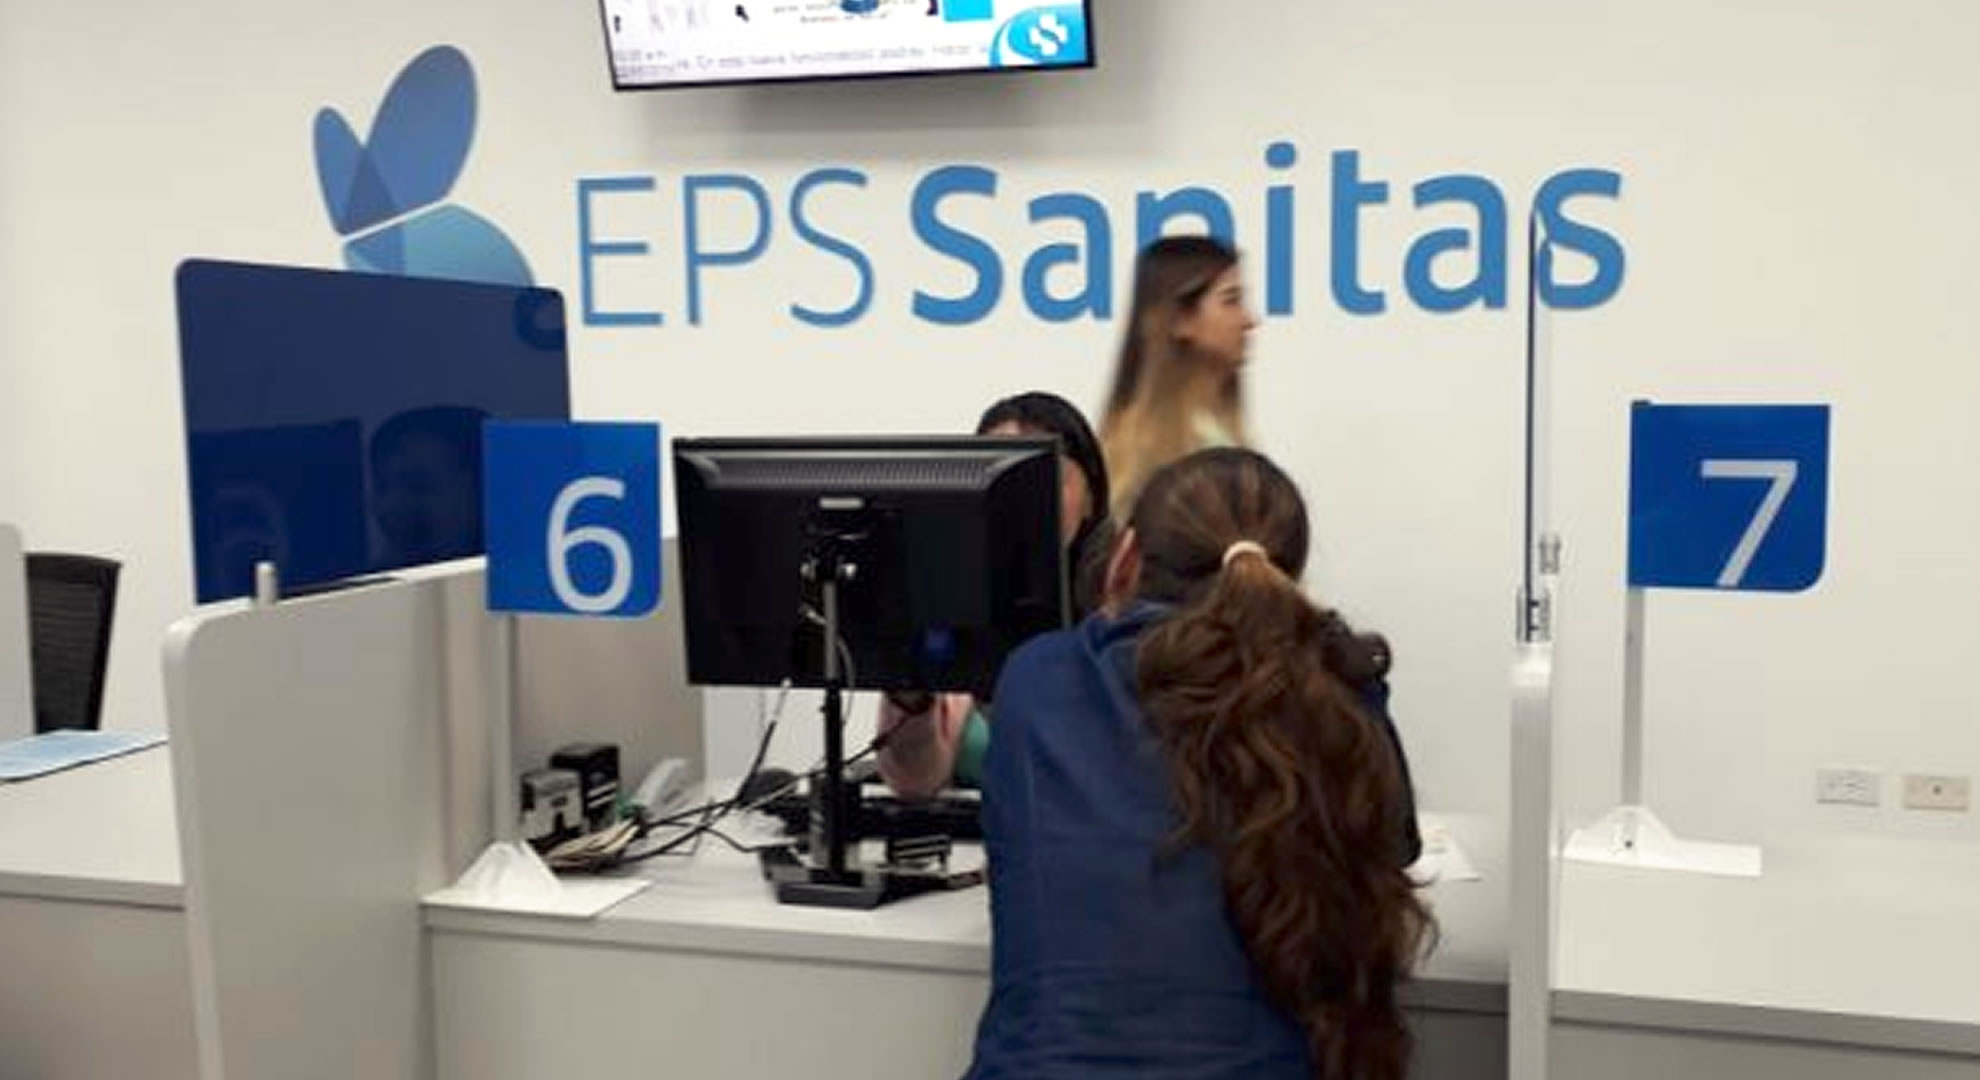 Se cayó el sistema: EPS Sánitas anunció que tiene problemas con su plataforma tecnológica